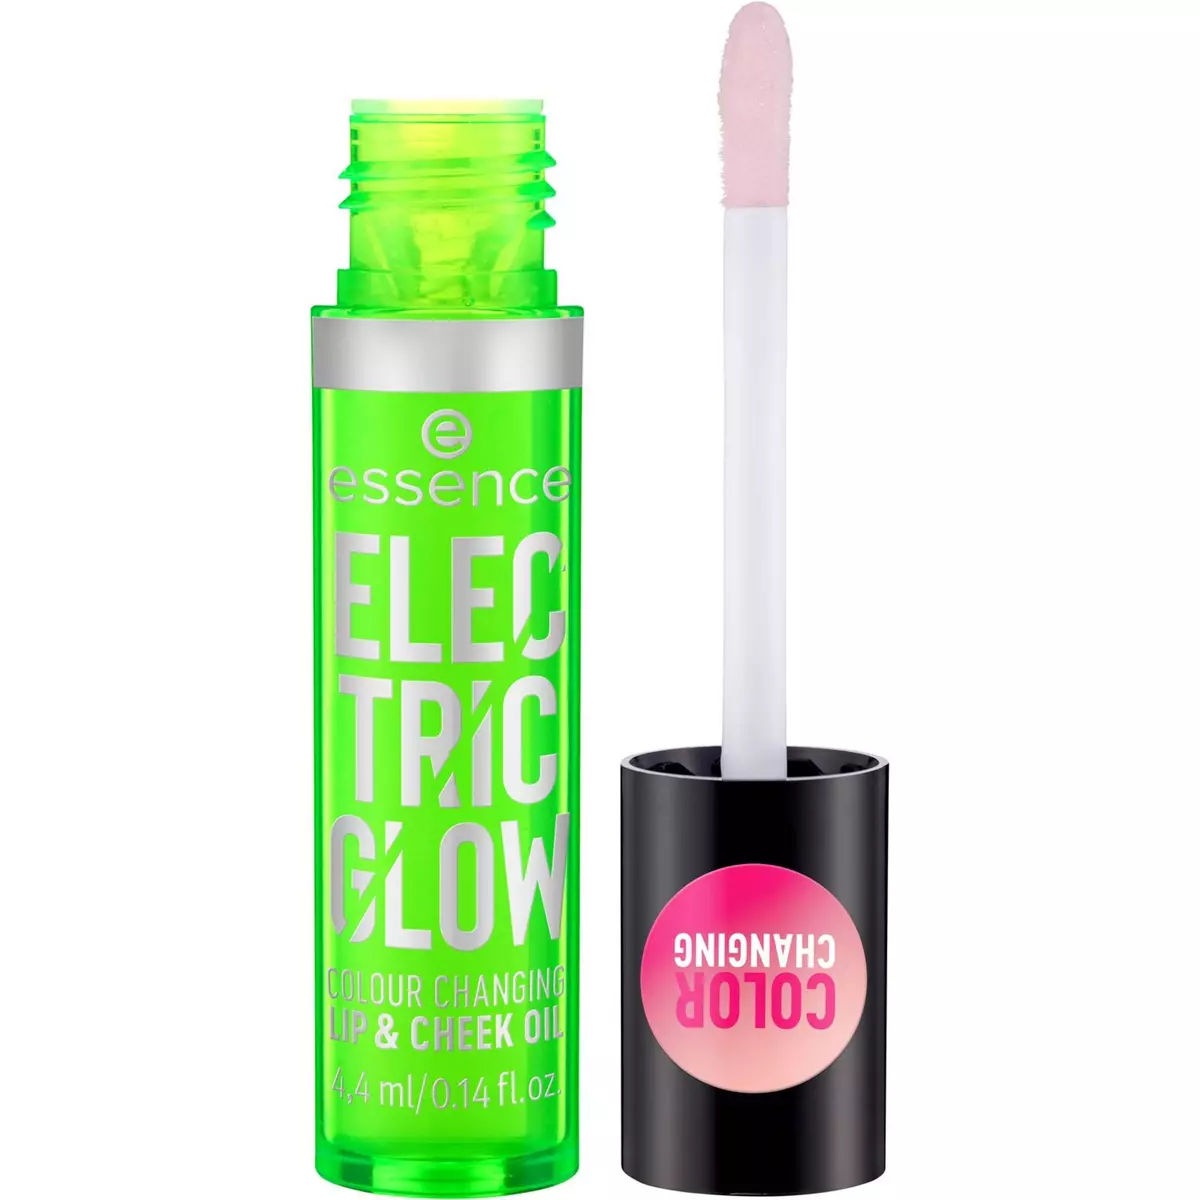 ESSENCE Electric glow huile pour lèvre et joue 4.4ml